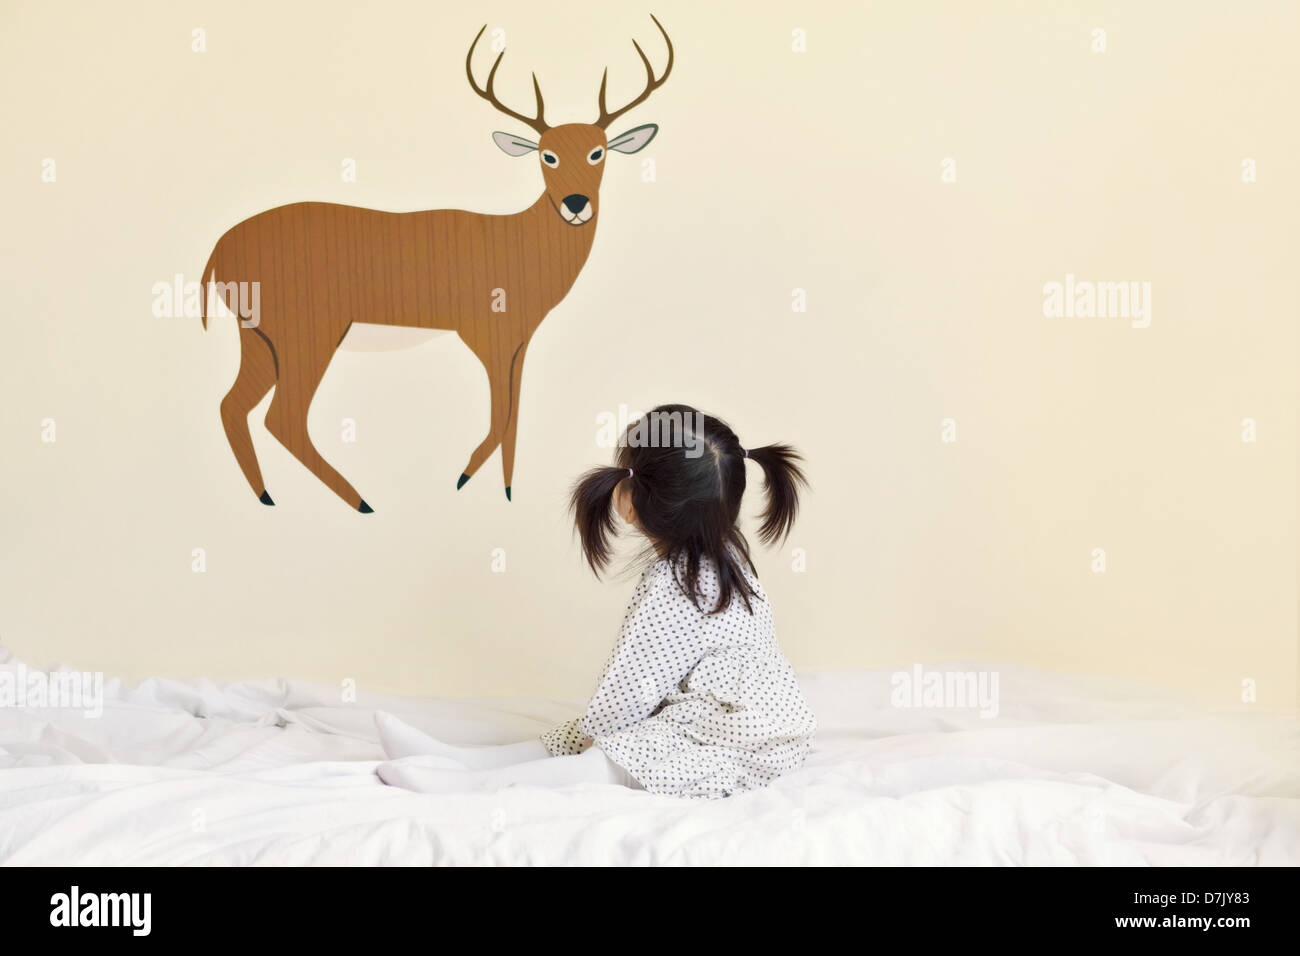 Niedliche koreanische amerikanische Mädchen mit Zöpfen auf Bett, Blick auf Abbildung der Hirsche mit dem Geweih Stockfoto